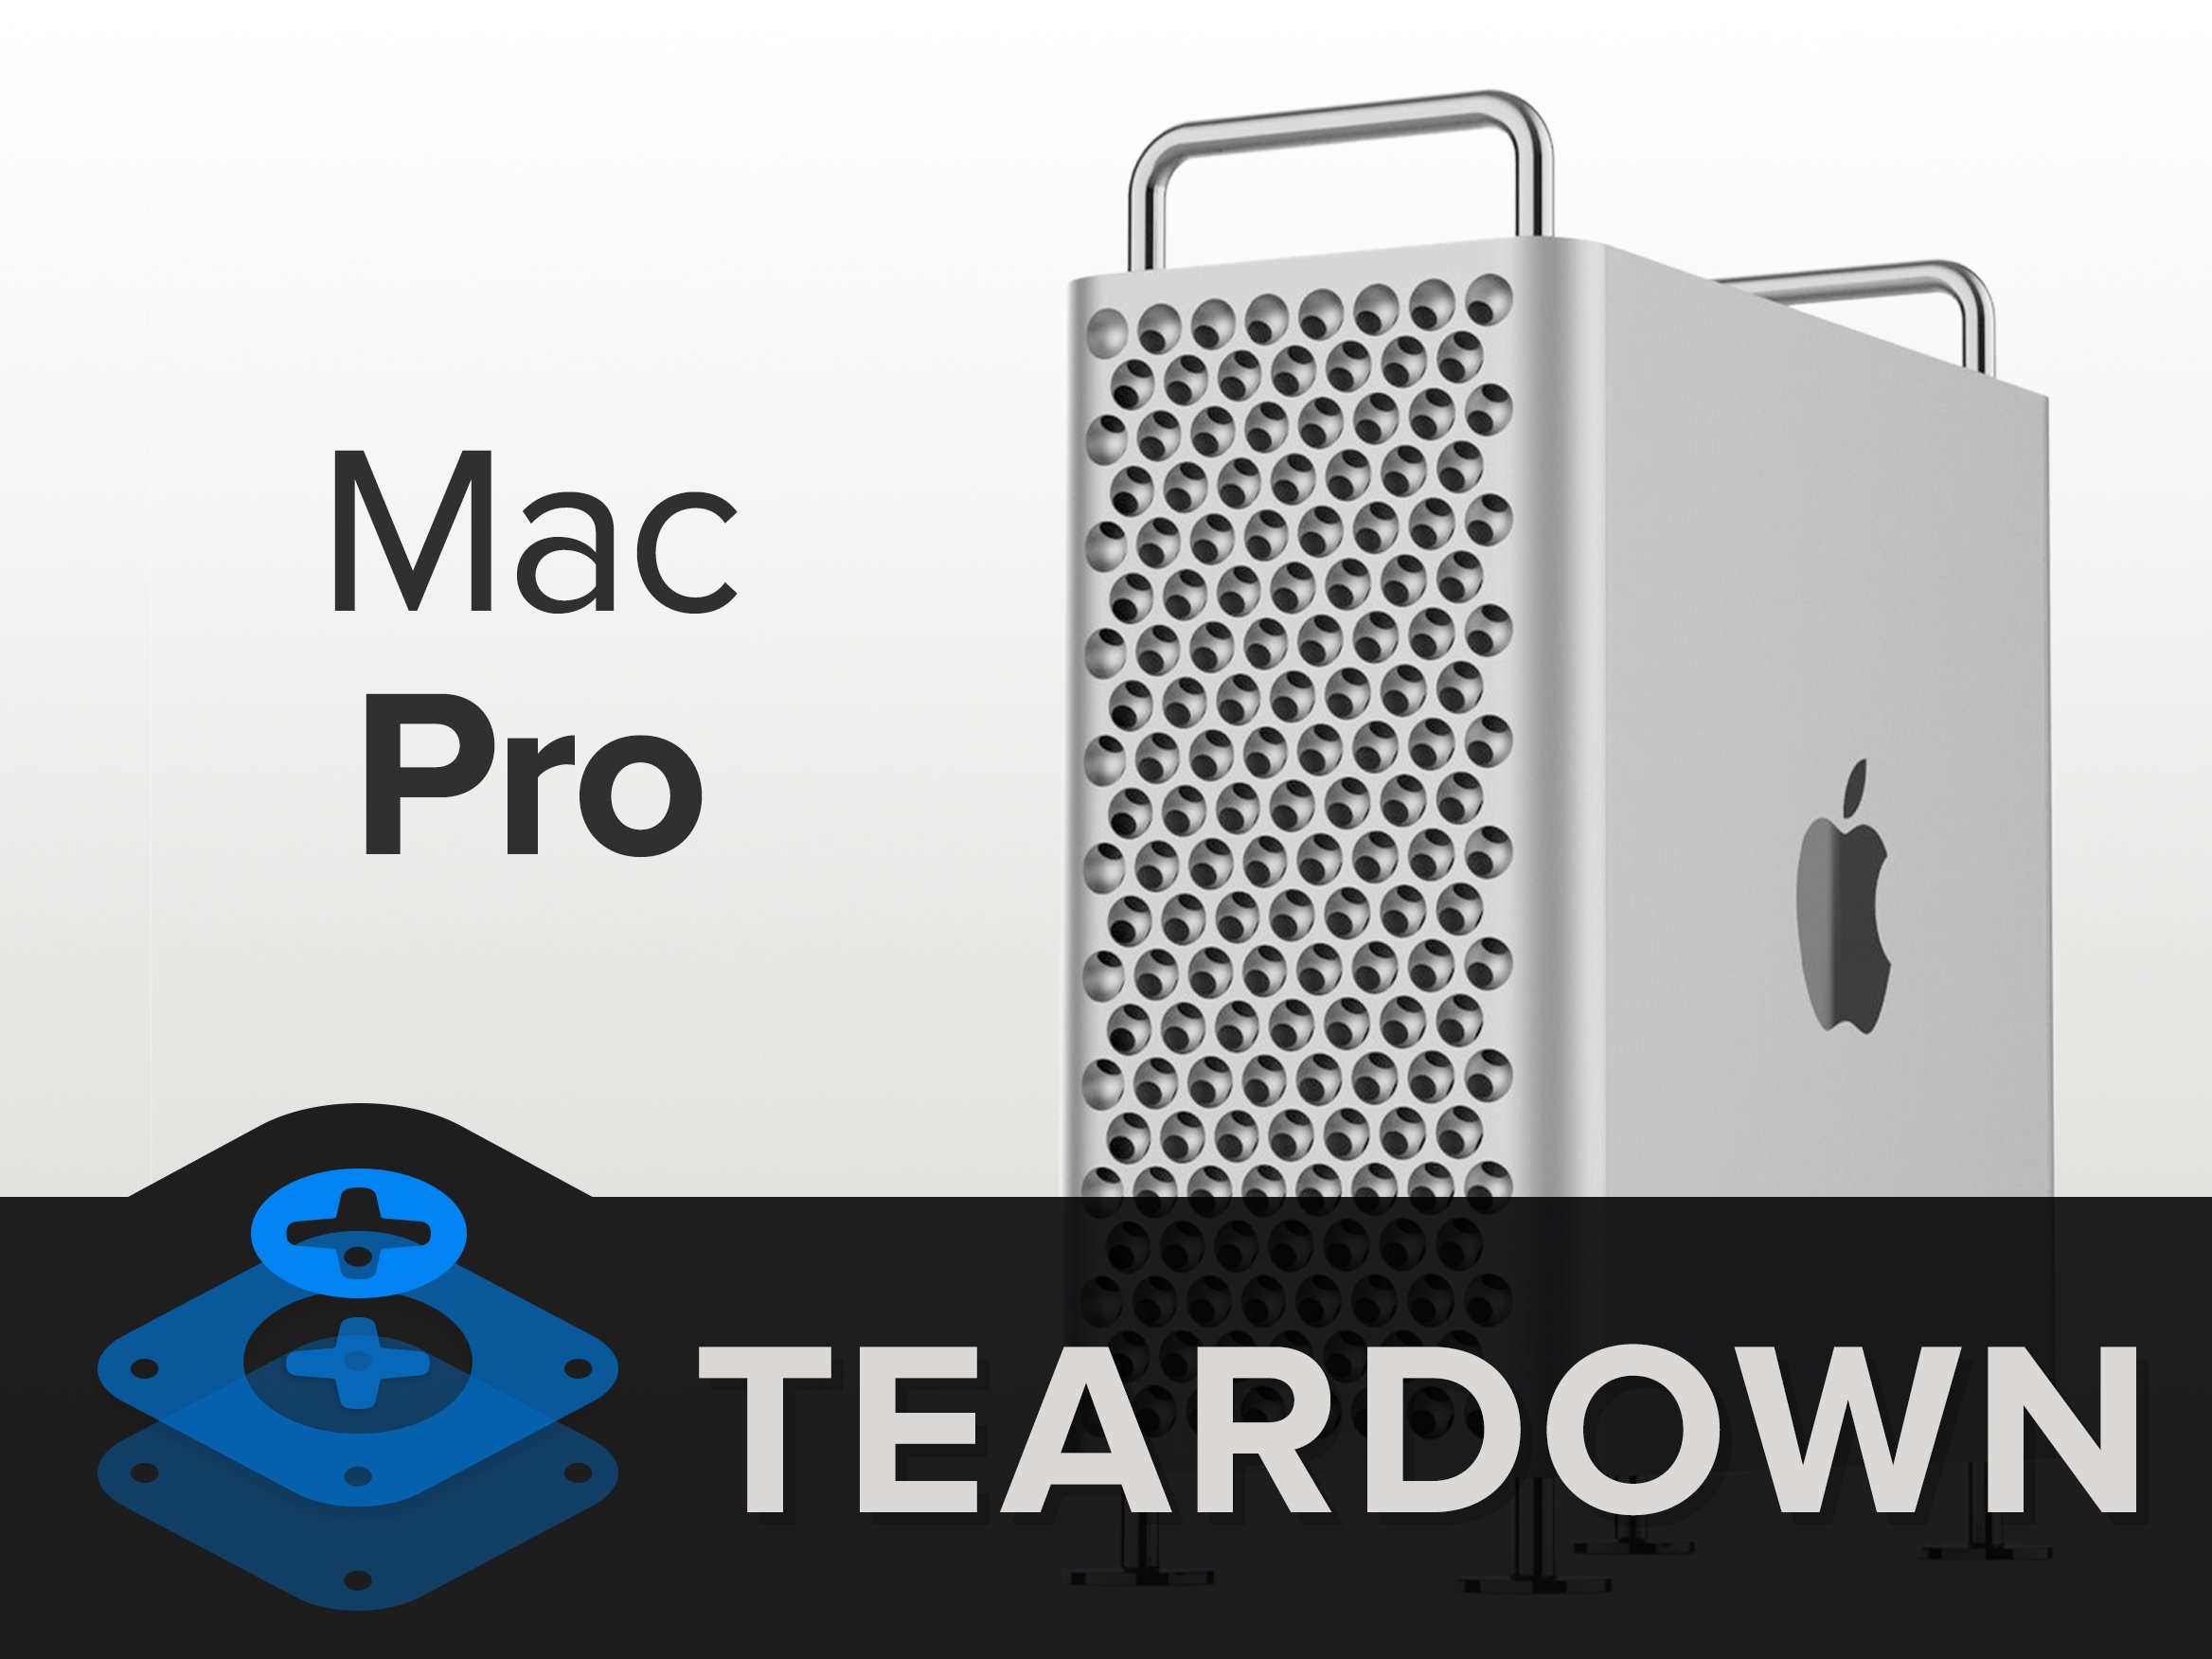 У iFixit назвали найбільш ремонтопридатний пристрій Apple - це новий ПК Mac Pro